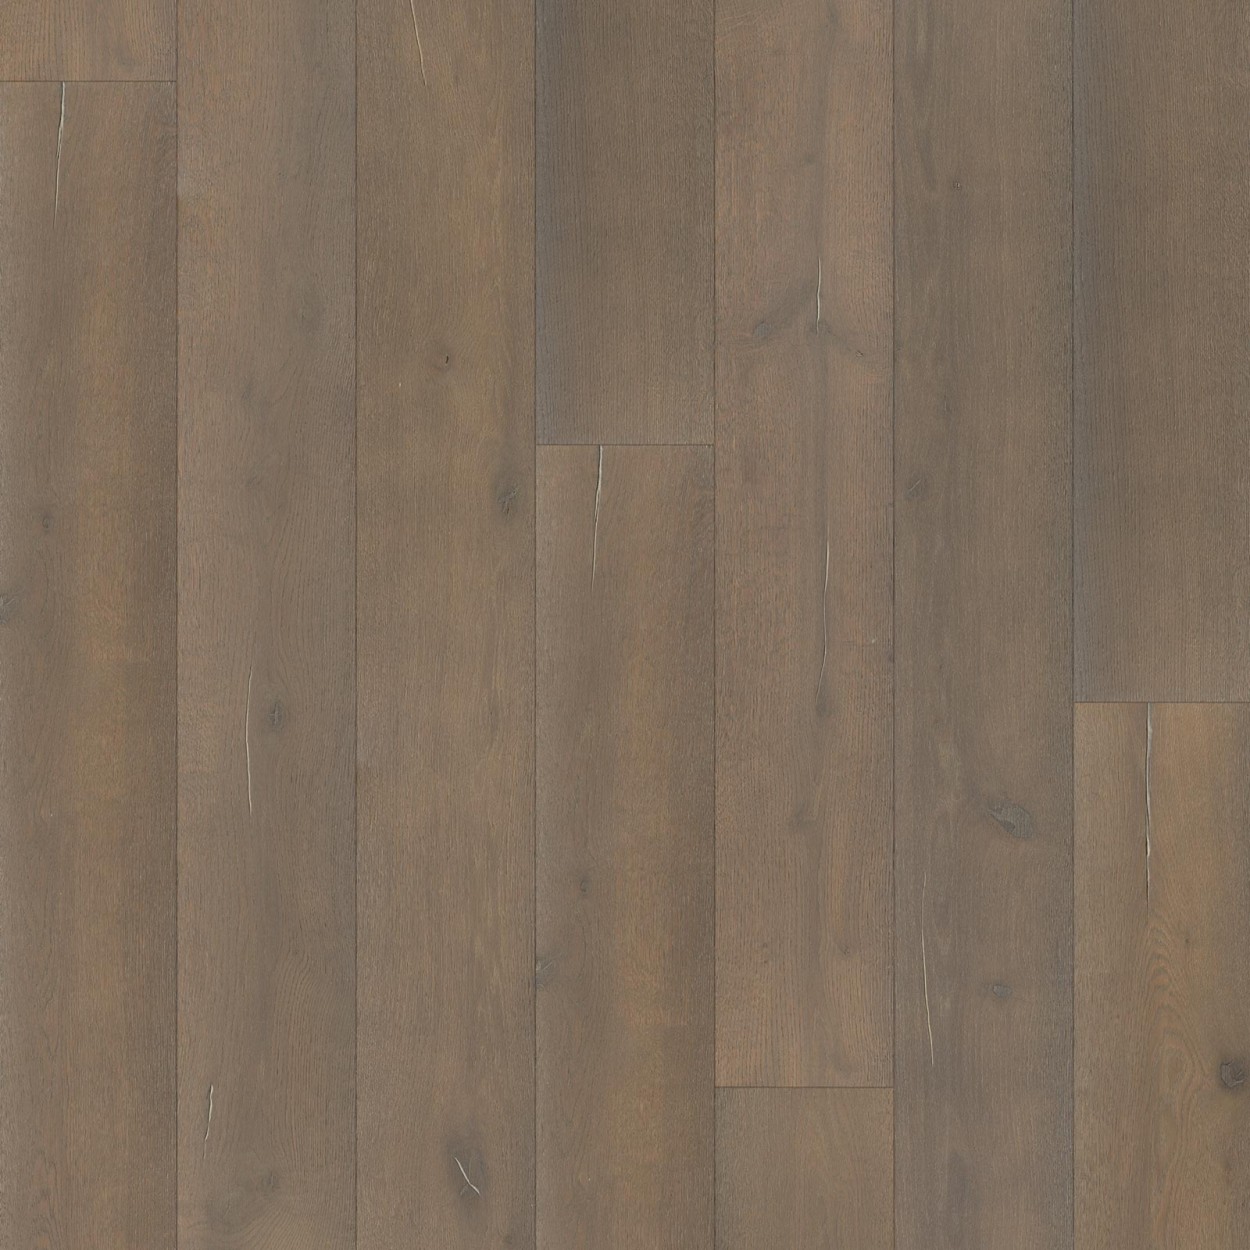 Karras - Ter Hürne - Πάτωμα Προγυαλισμένο Unique Collection planked oak unique mist brown impulsive